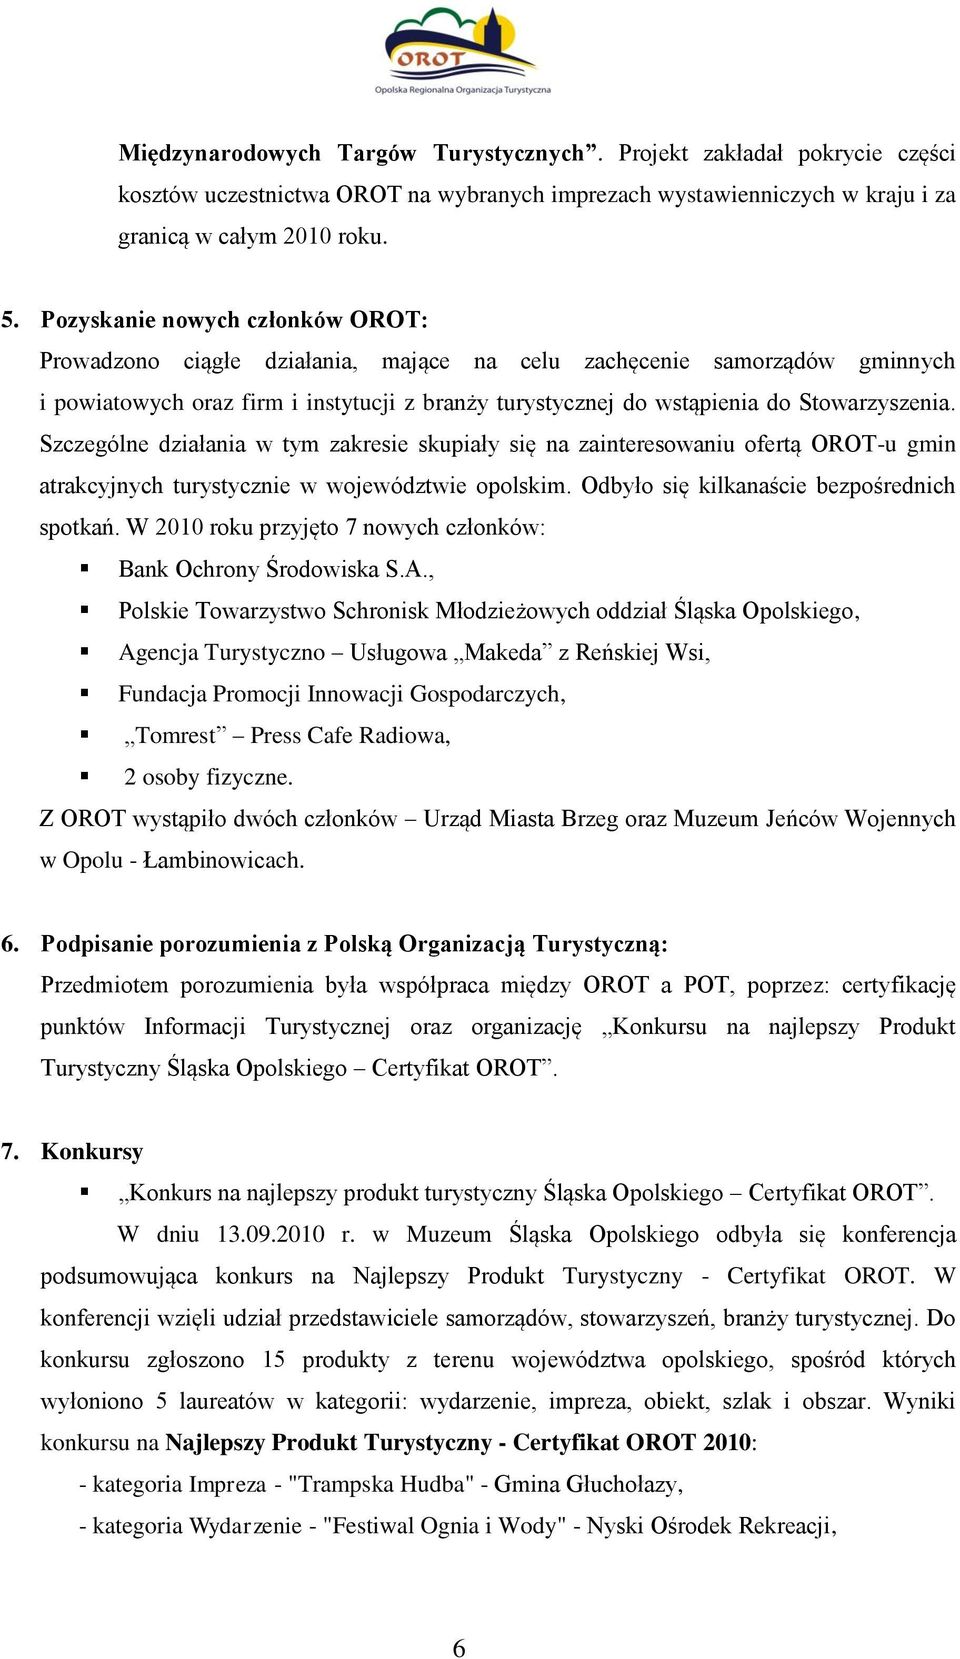 Szczególne działania w tym zakresie skupiały się na zainteresowaniu ofertą OROT-u gmin atrakcyjnych turystycznie w województwie opolskim. Odbyło się kilkanaście bezpośrednich spotkań.